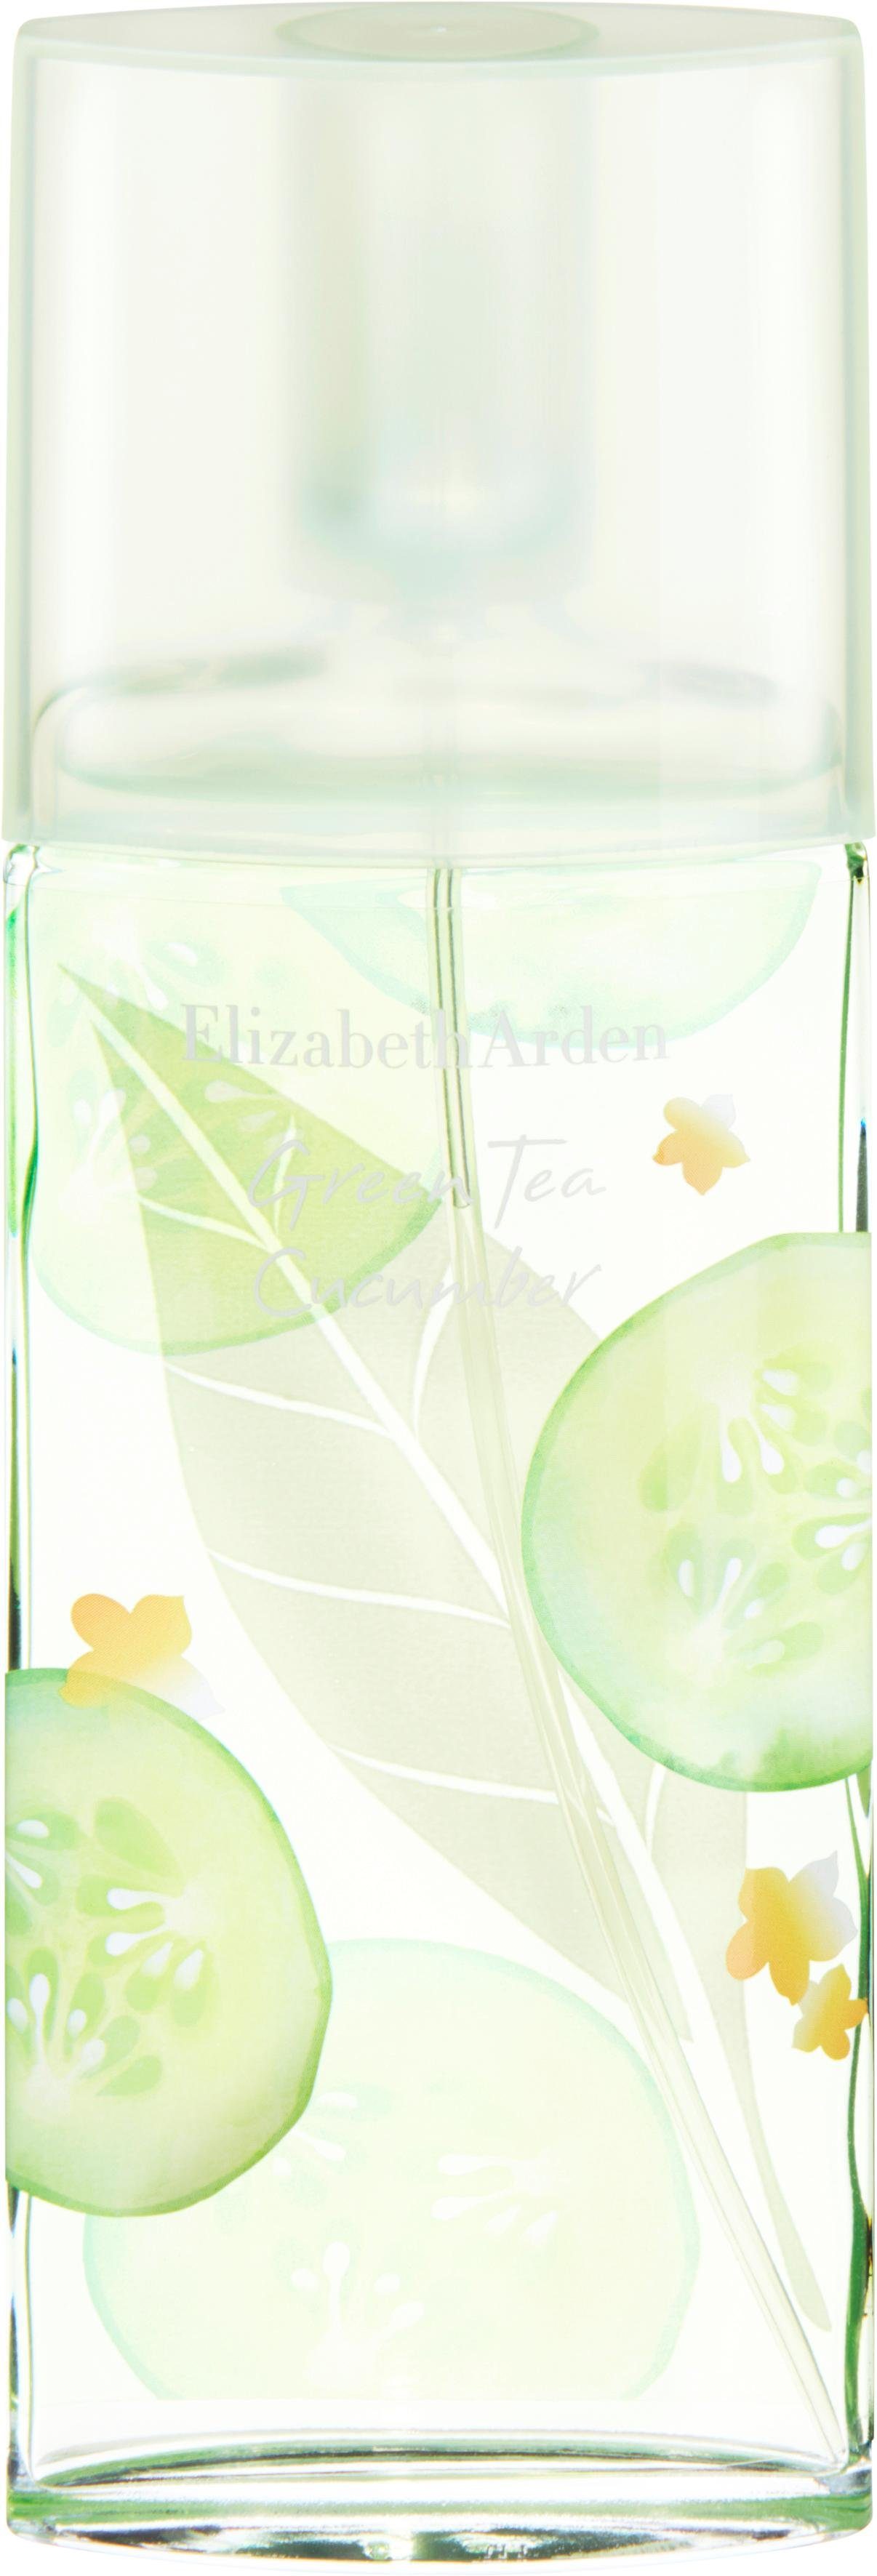 Elizabeth Arden Eau de Tea Toilette Green Cucumber